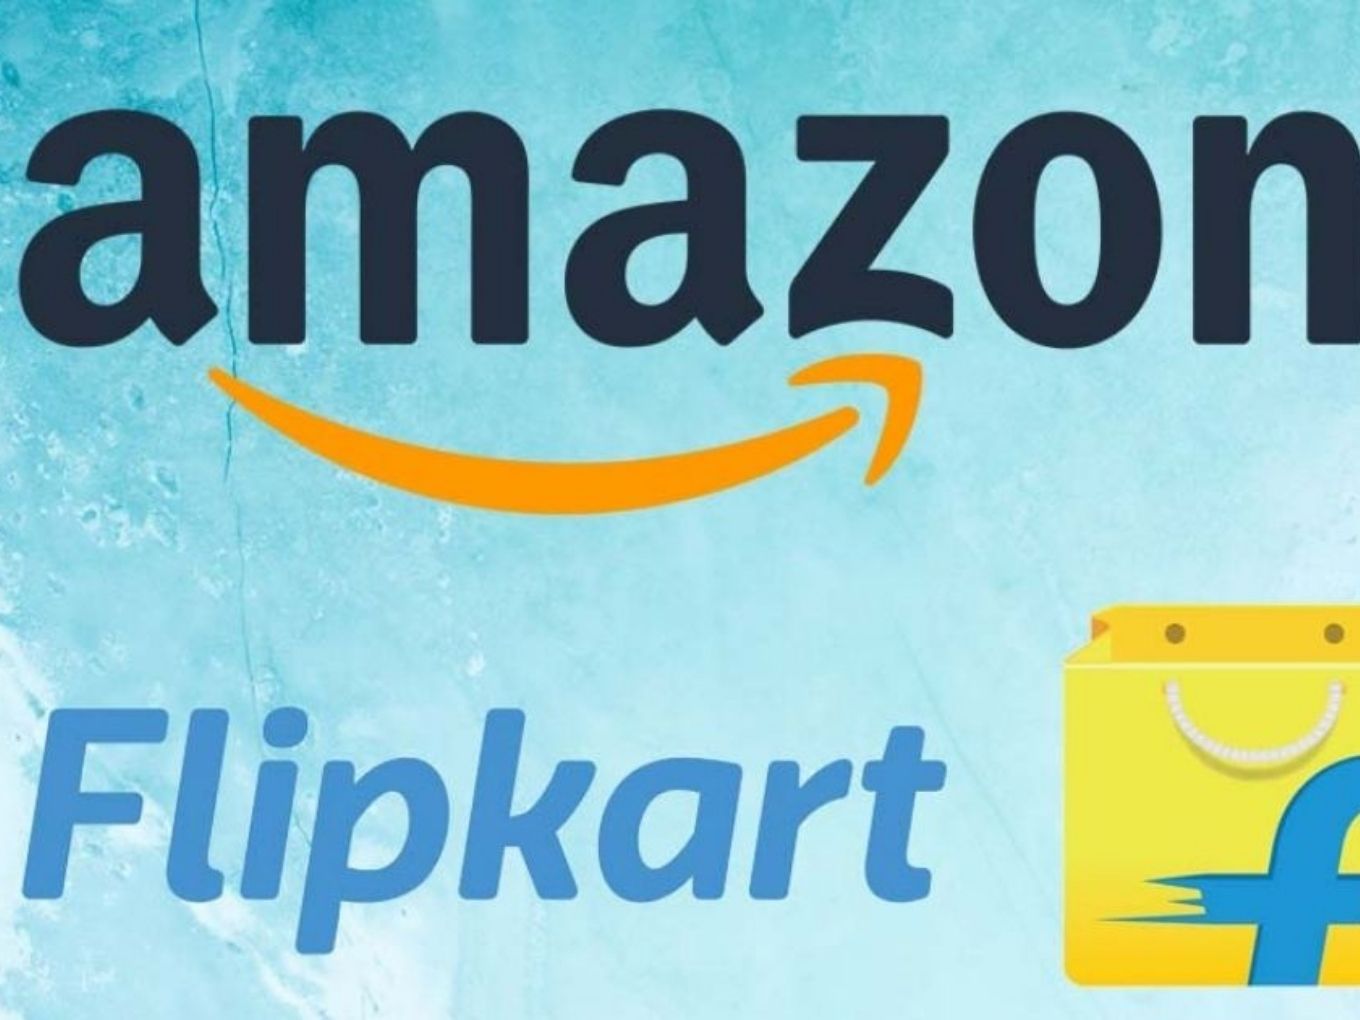 SC Junks CCI’s Plea Against Flipkart, Amazon Over Exclusive Deals